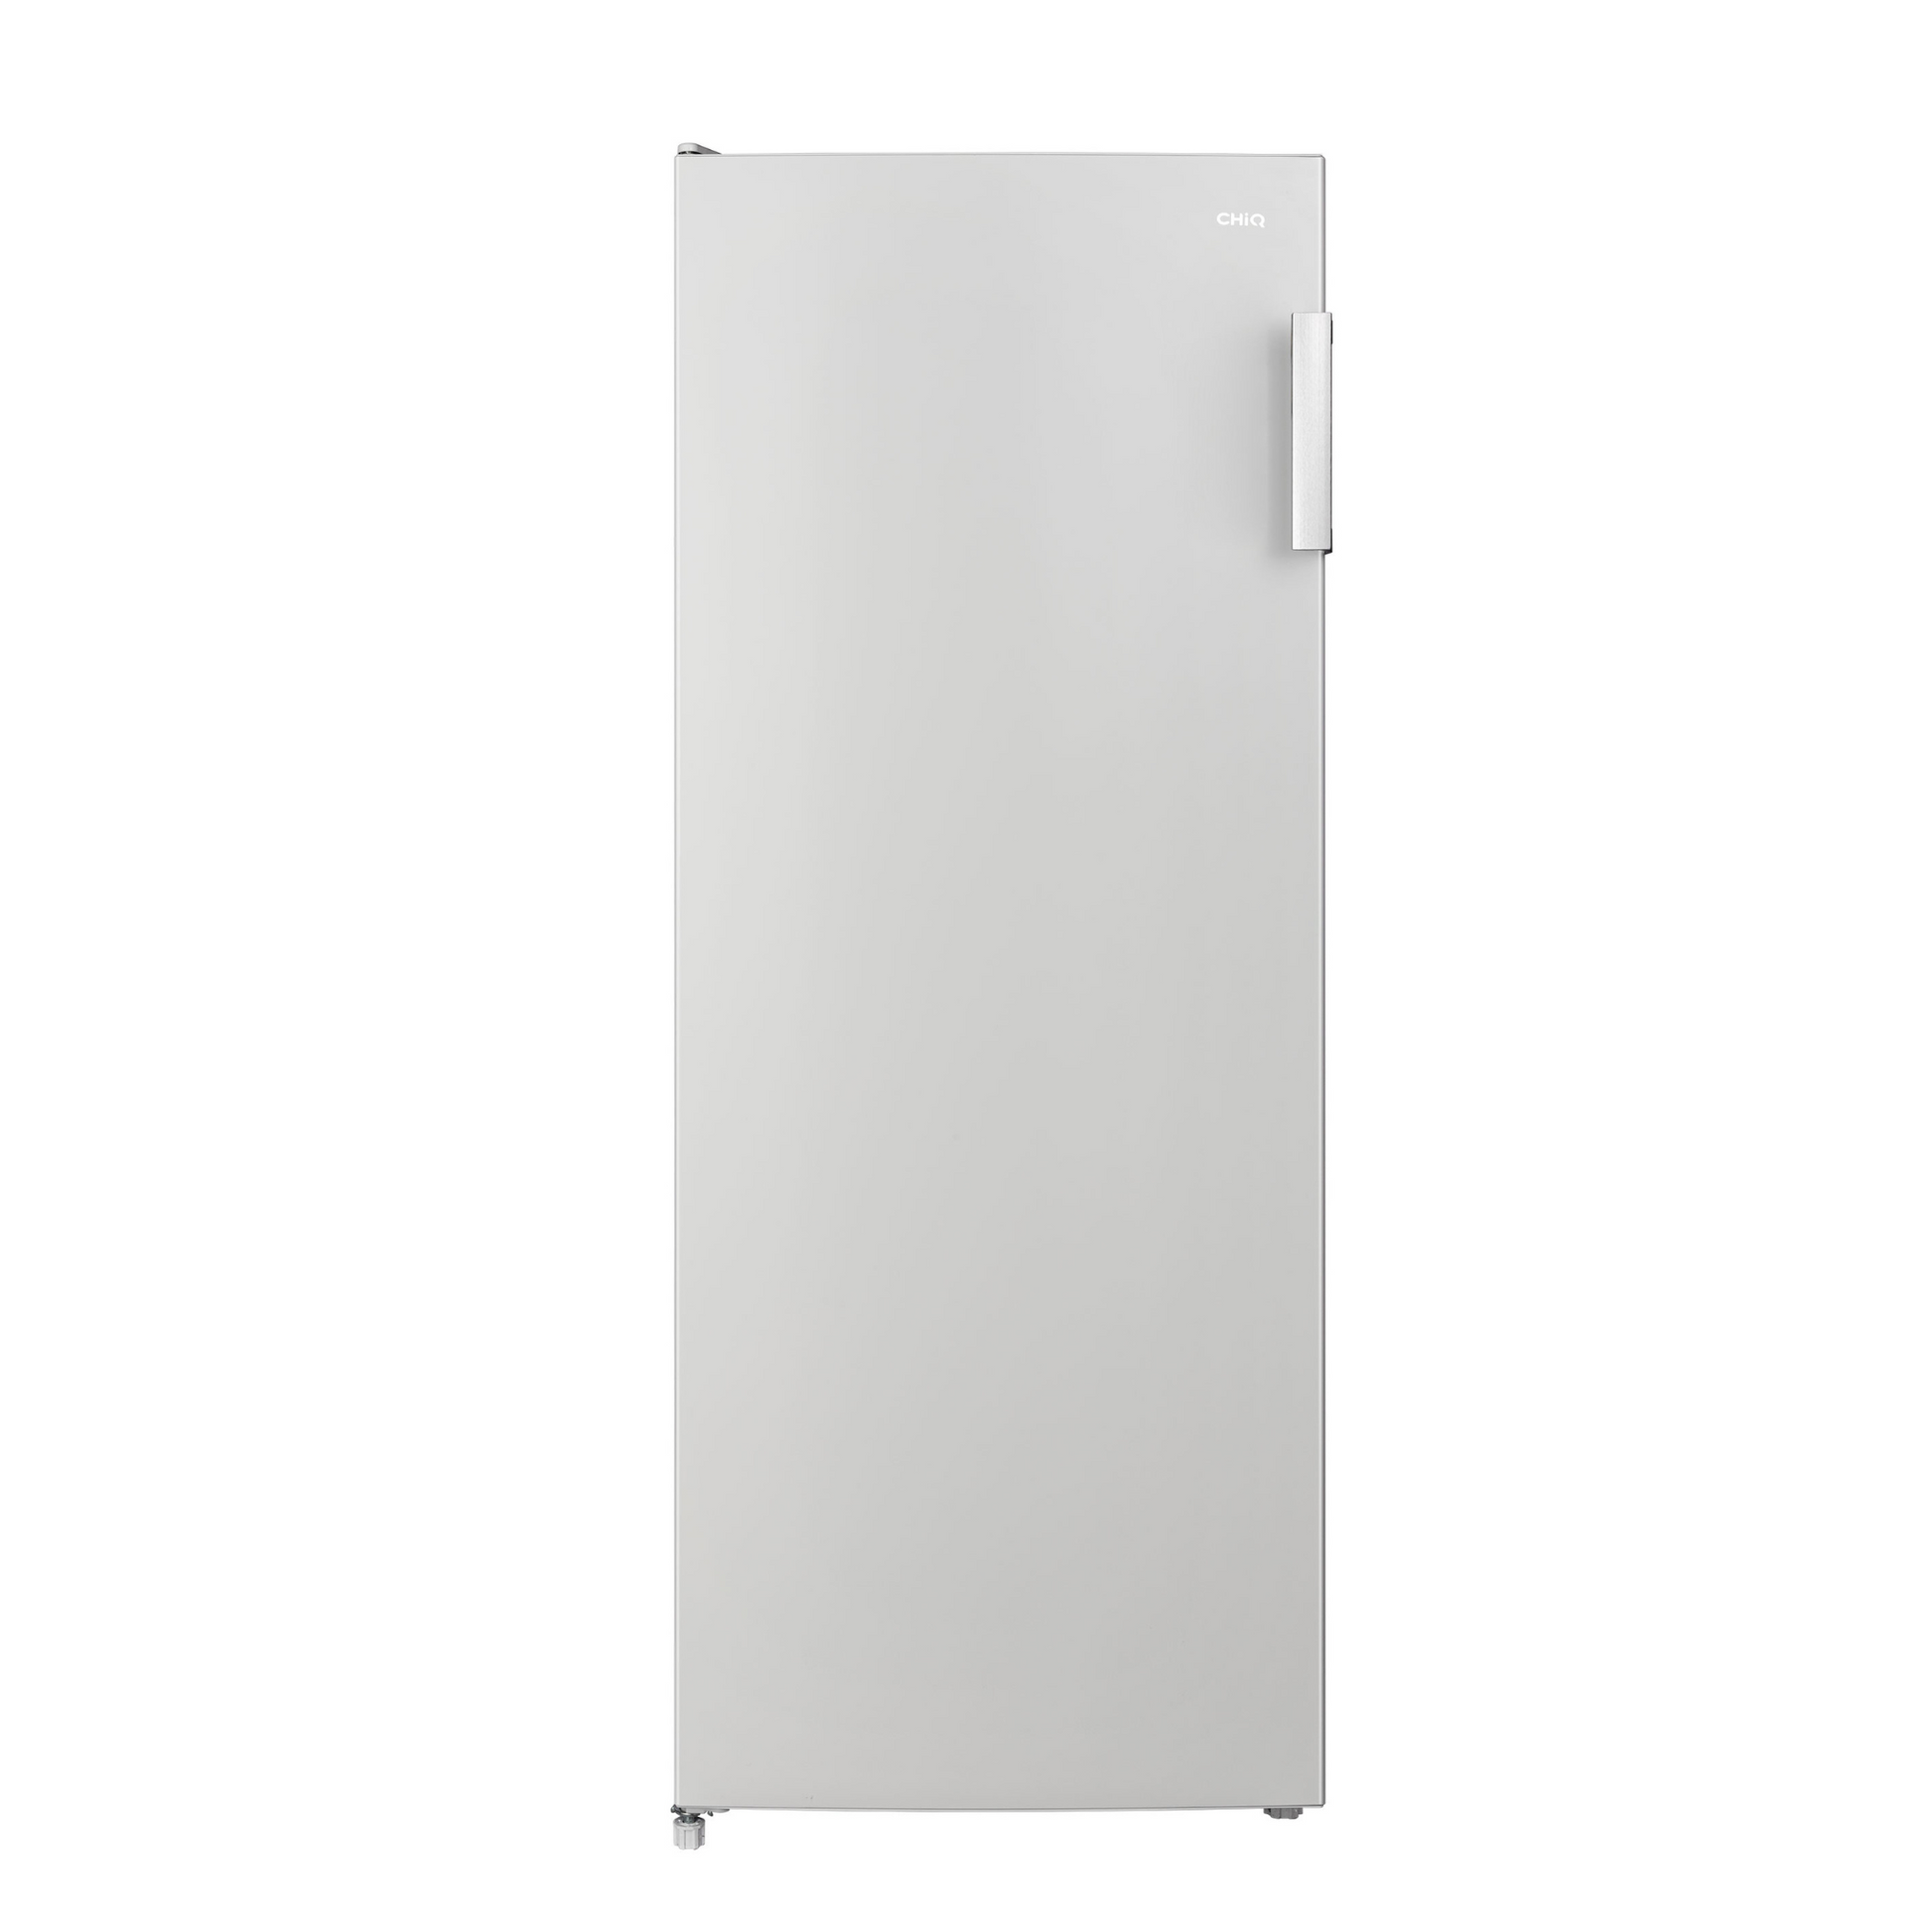 ChiQ 205L Refrigerator, CSR205DW